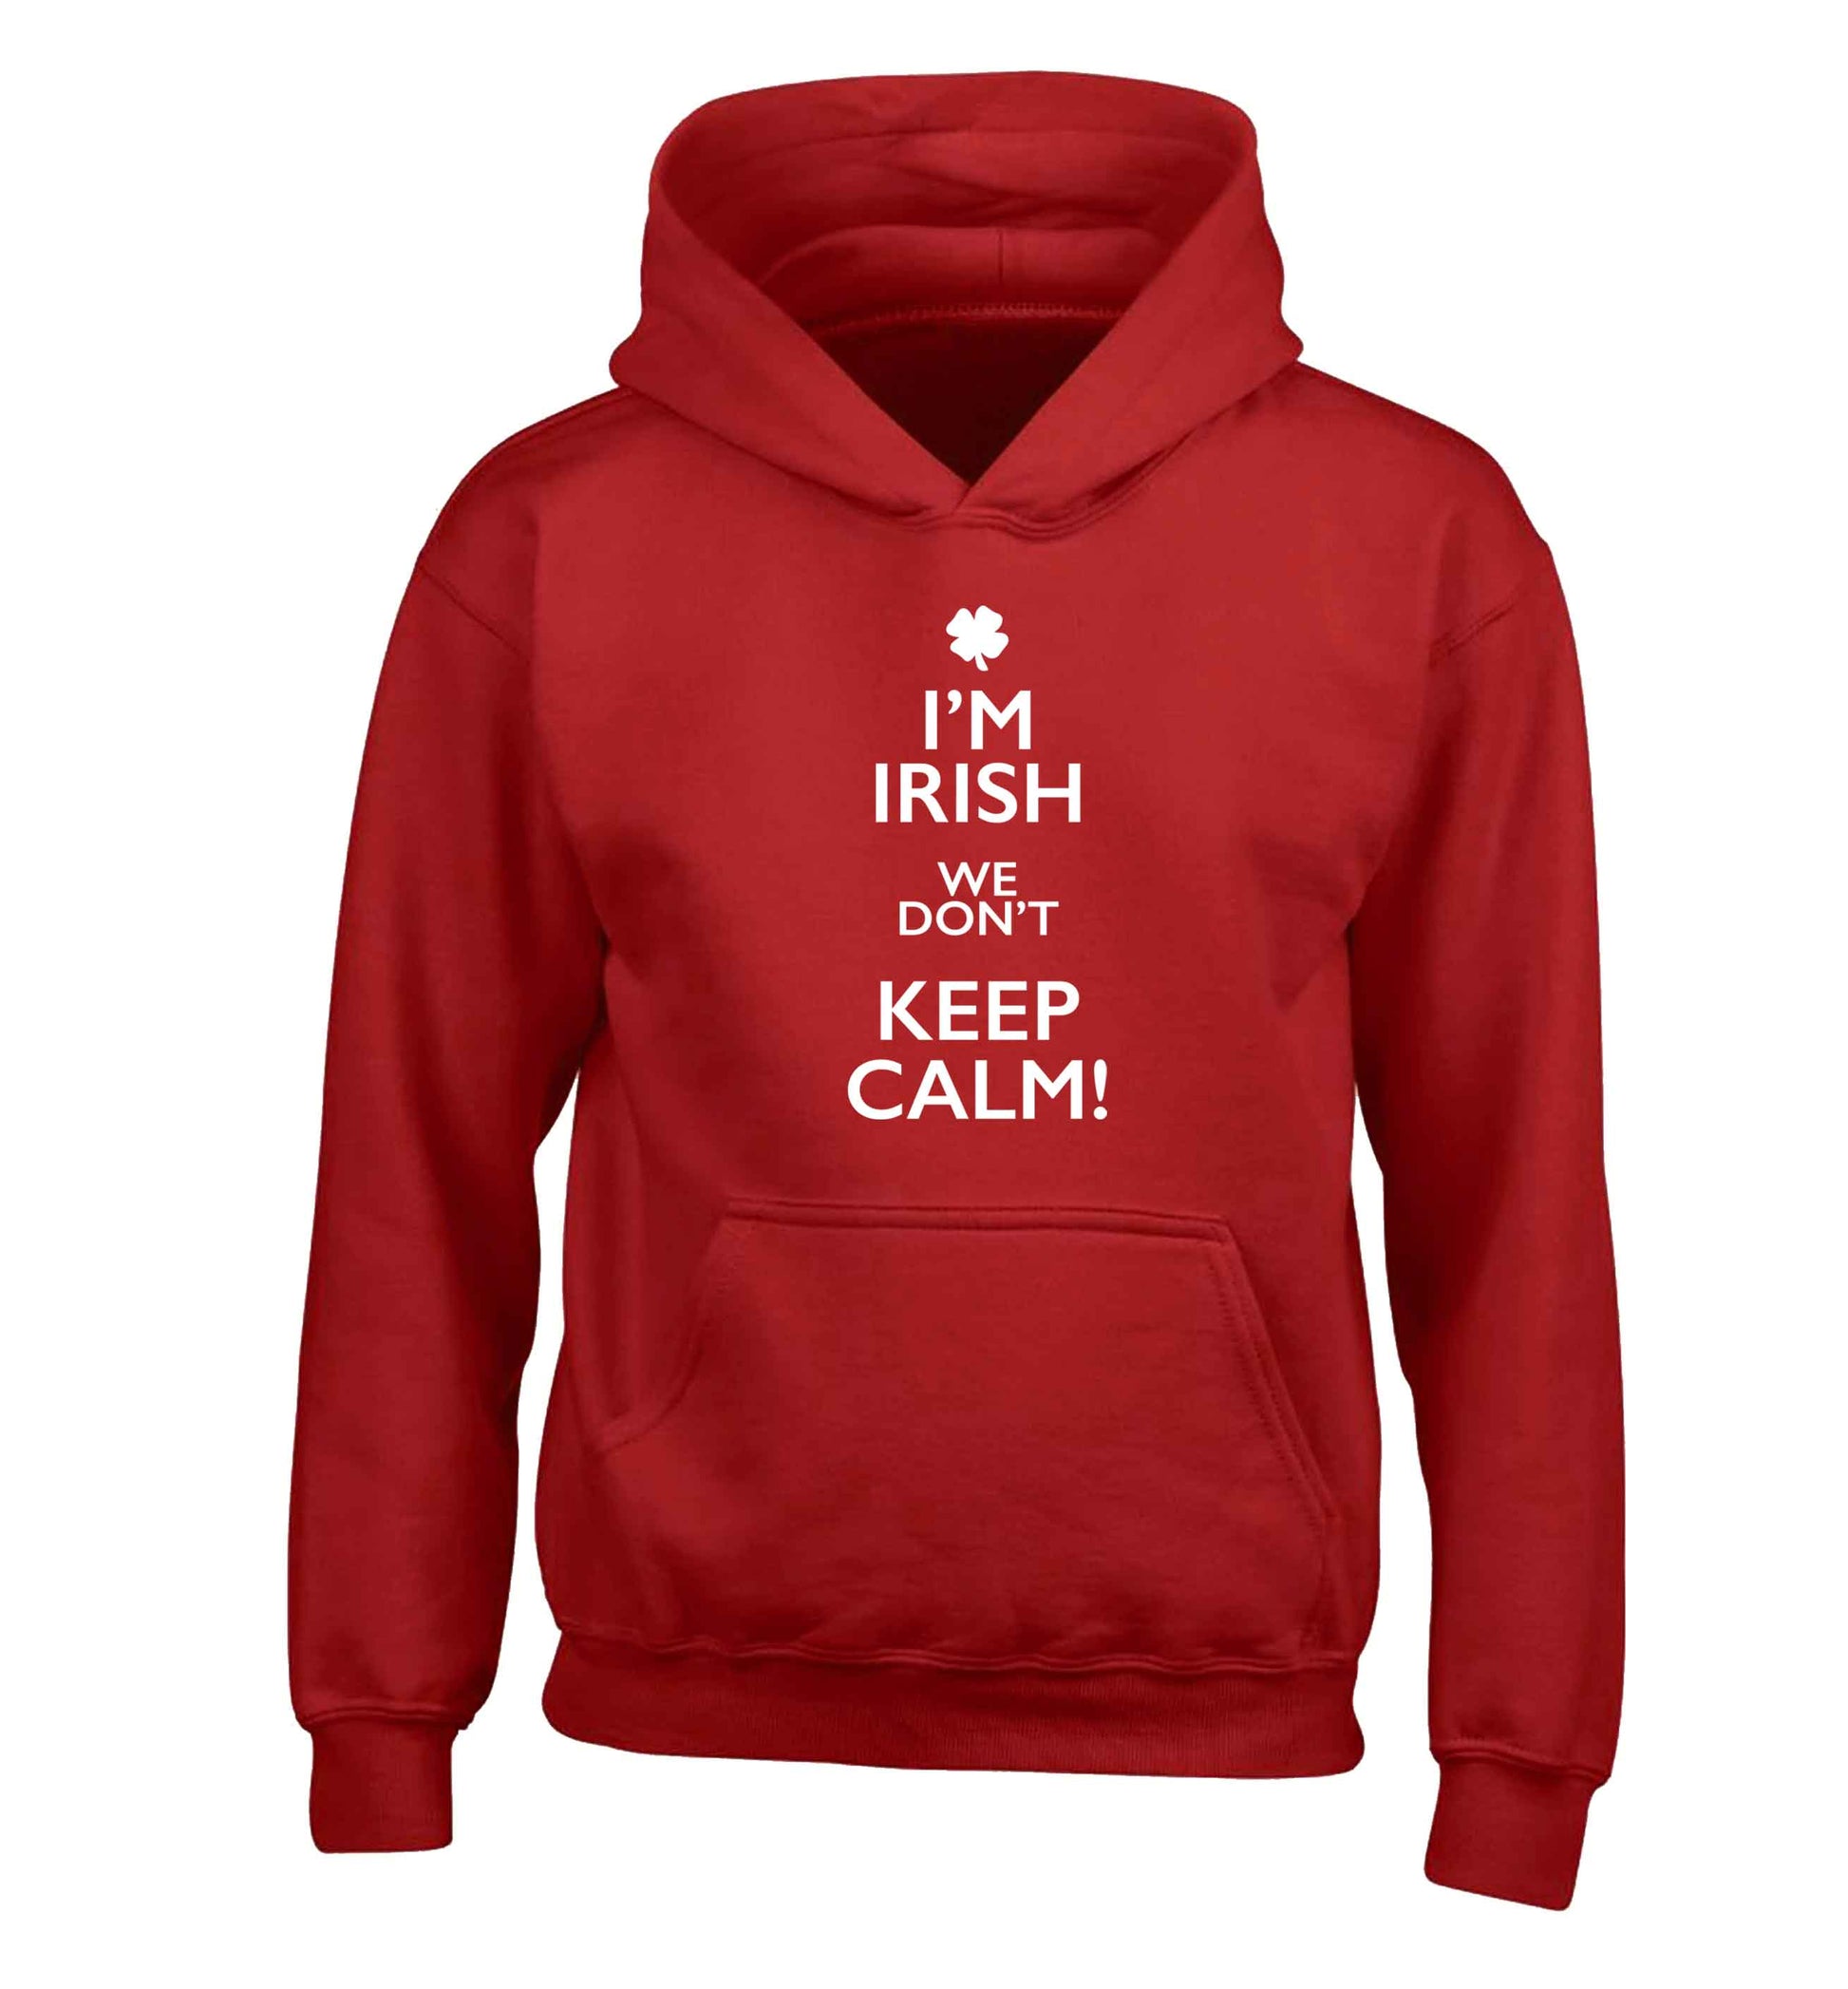 I'm Irish we don't keep calm children's red hoodie 12-13 Years